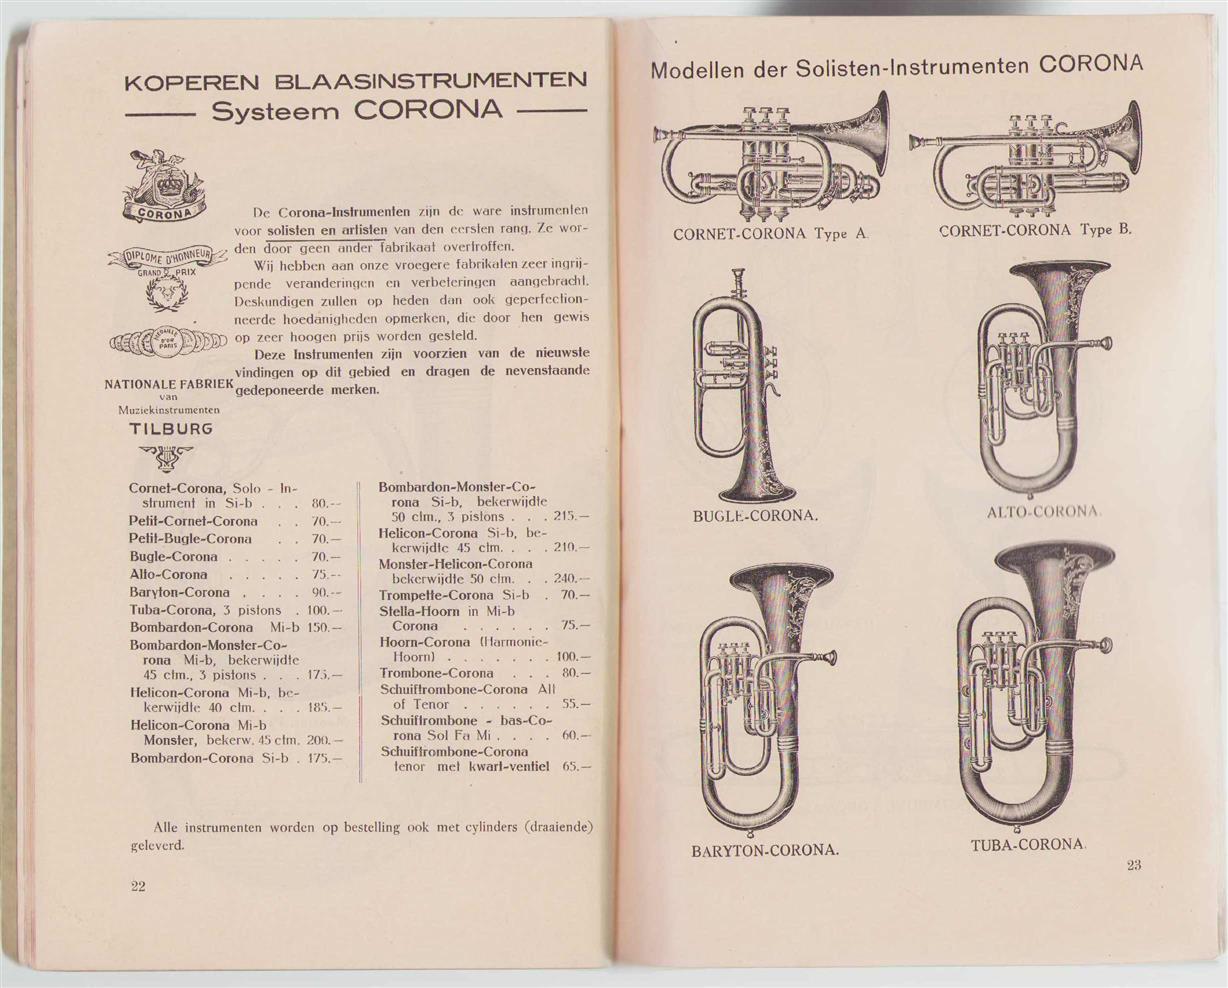 (kessels) - (BEDRIJF CATALOGUS - TRADE CATALOGUE) Nationale - Fabriek van Muziek - instrumenten Tilburg - Catalogus der afdeelingen koperen....